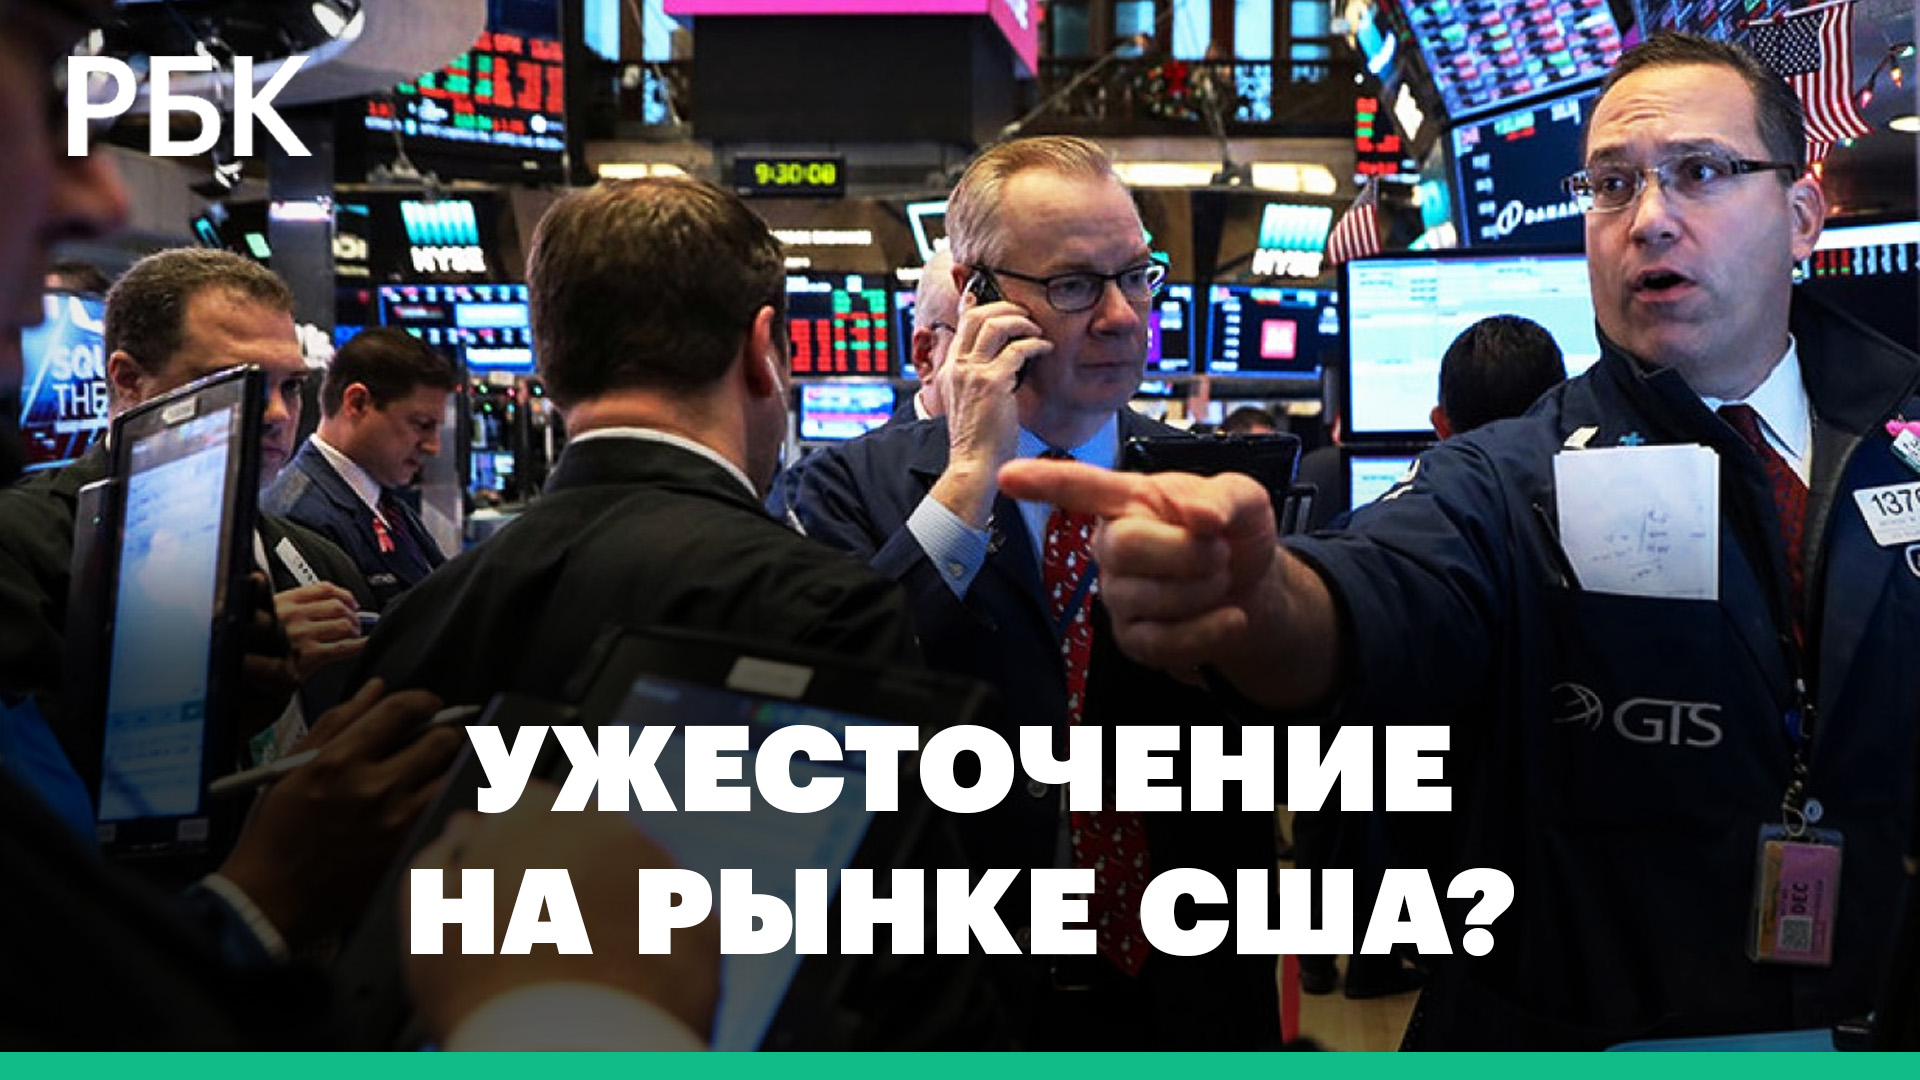 Актуально ли еще покупать российских экспортеров и что значит ужесточение на рынке США?